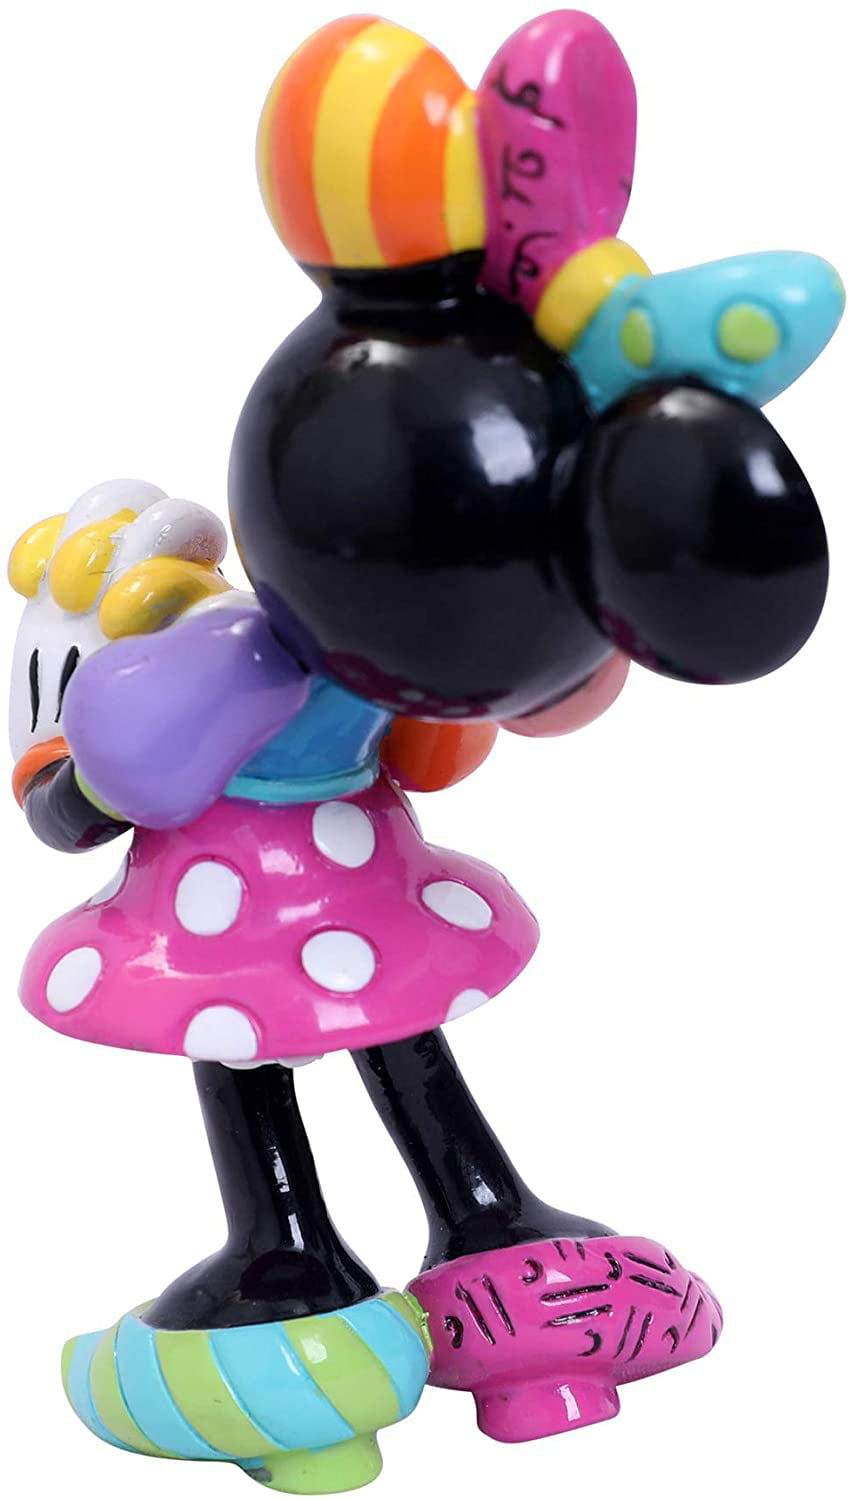 Disney Enesco Romero Britto Mini Figur 6006085 Mickey Mouse 